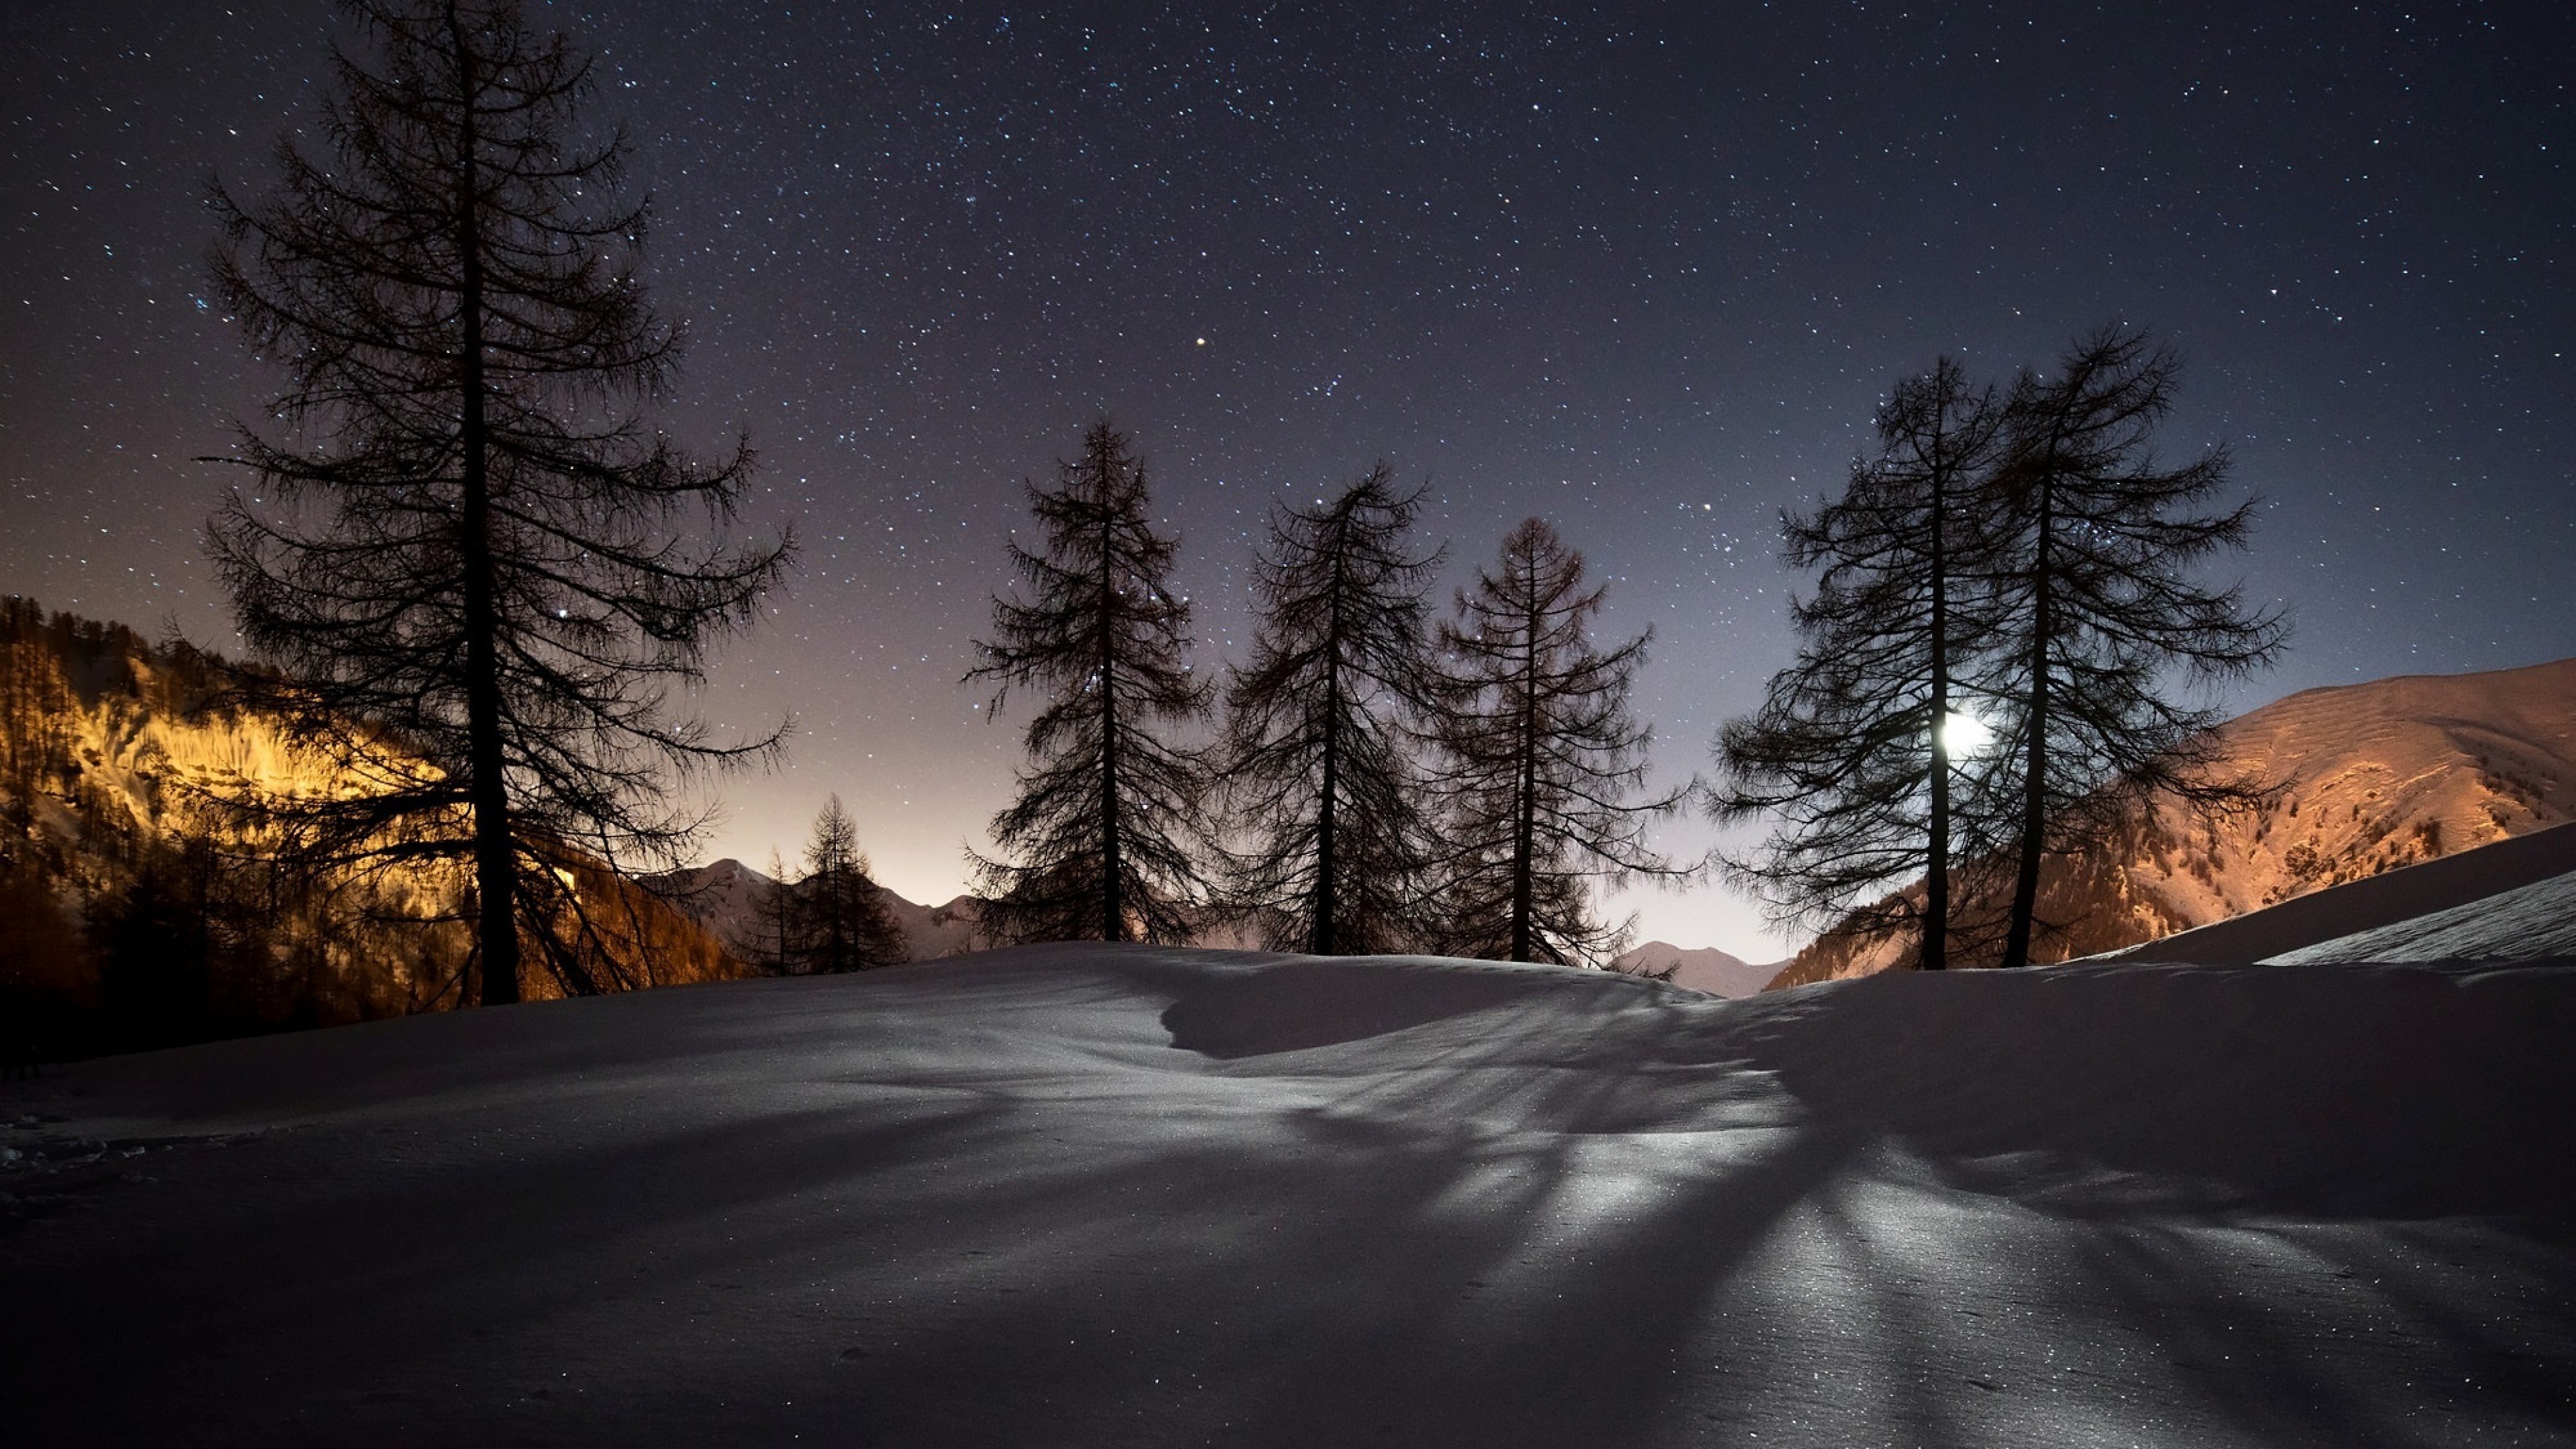 Snow photo wallpaper, Winter wonderland, Frosty scenery, Cold season beauty, 3840x2160 4K Desktop